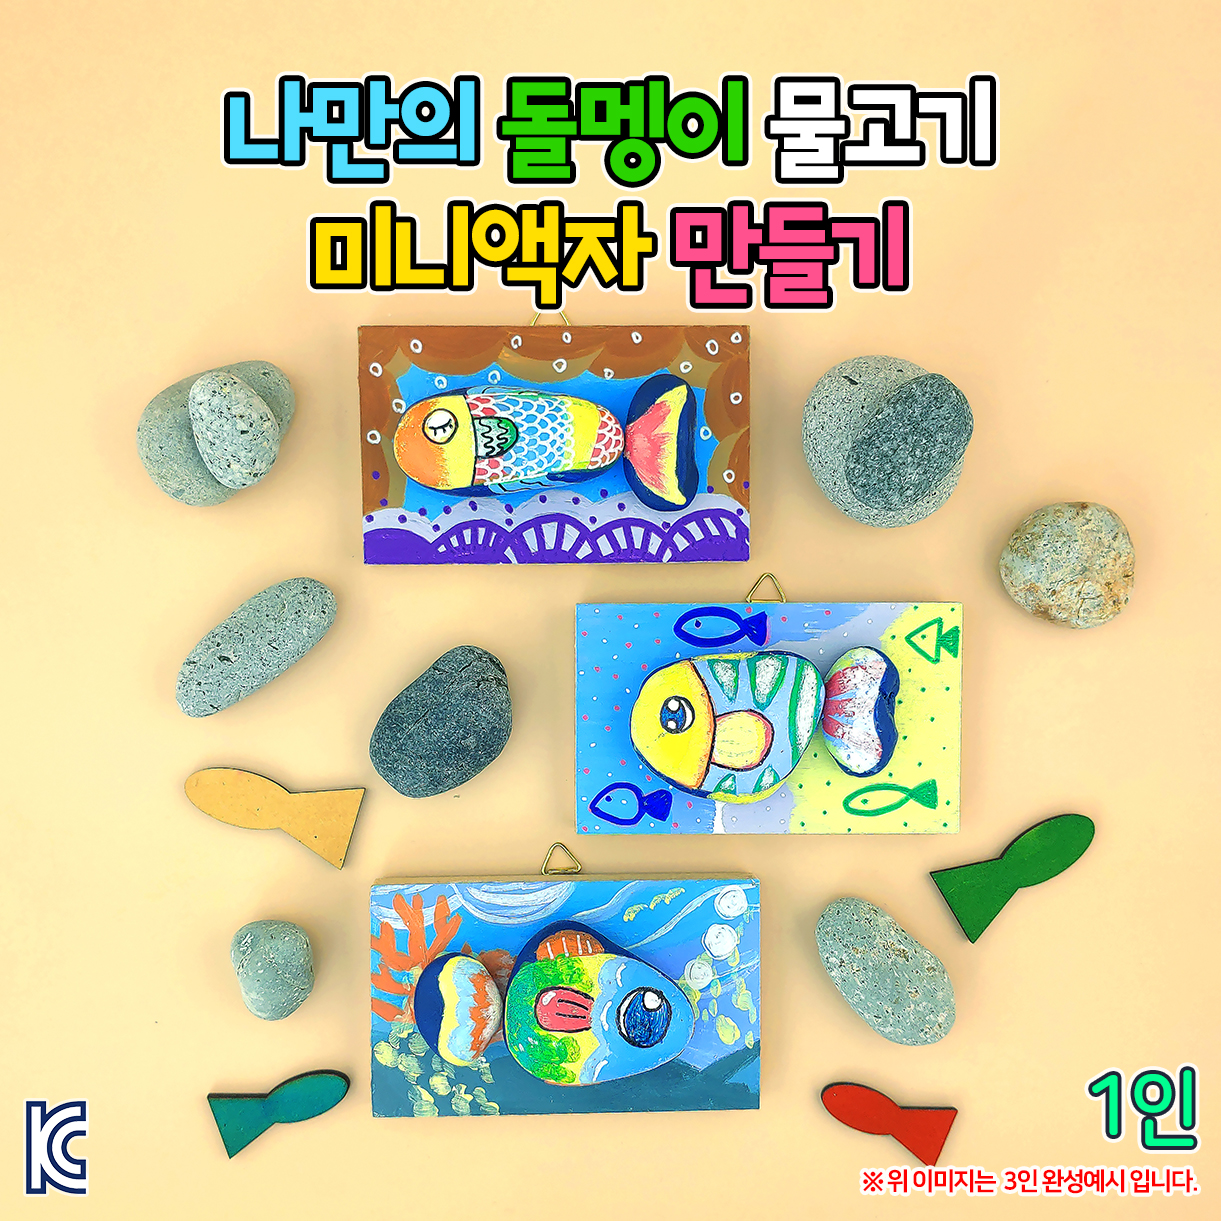 [오렌지네380] 나만의 돌멩이 물고기 미니액자 만들기-1인